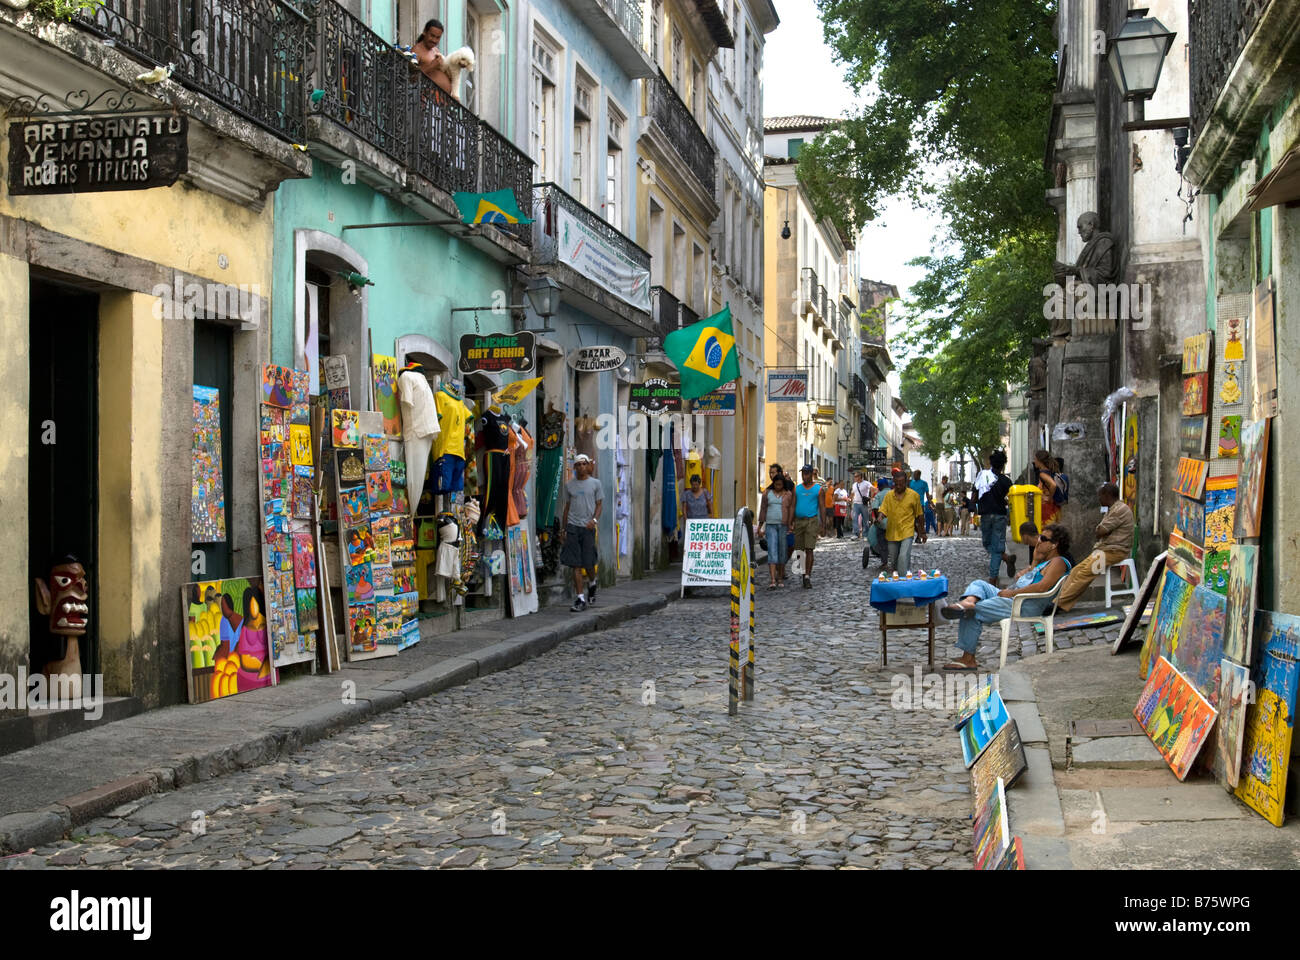 Art and Souvenir shops in Pelourinho, Salvador de Bahia, Brazil Stock Photo  - Alamy